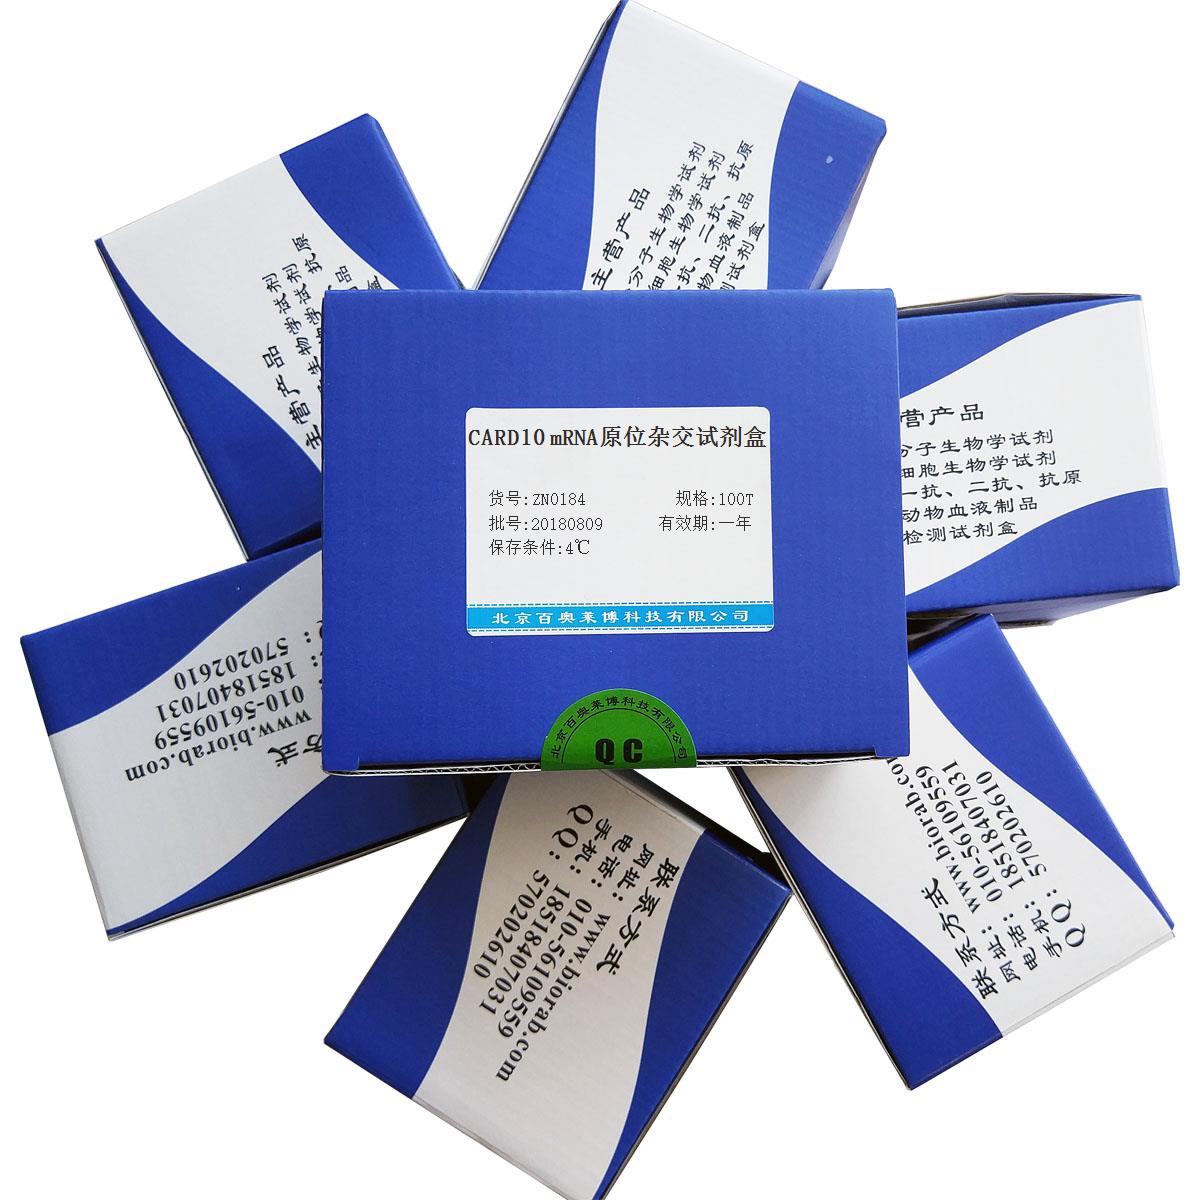 CARD10 mRNA原位杂交试剂盒